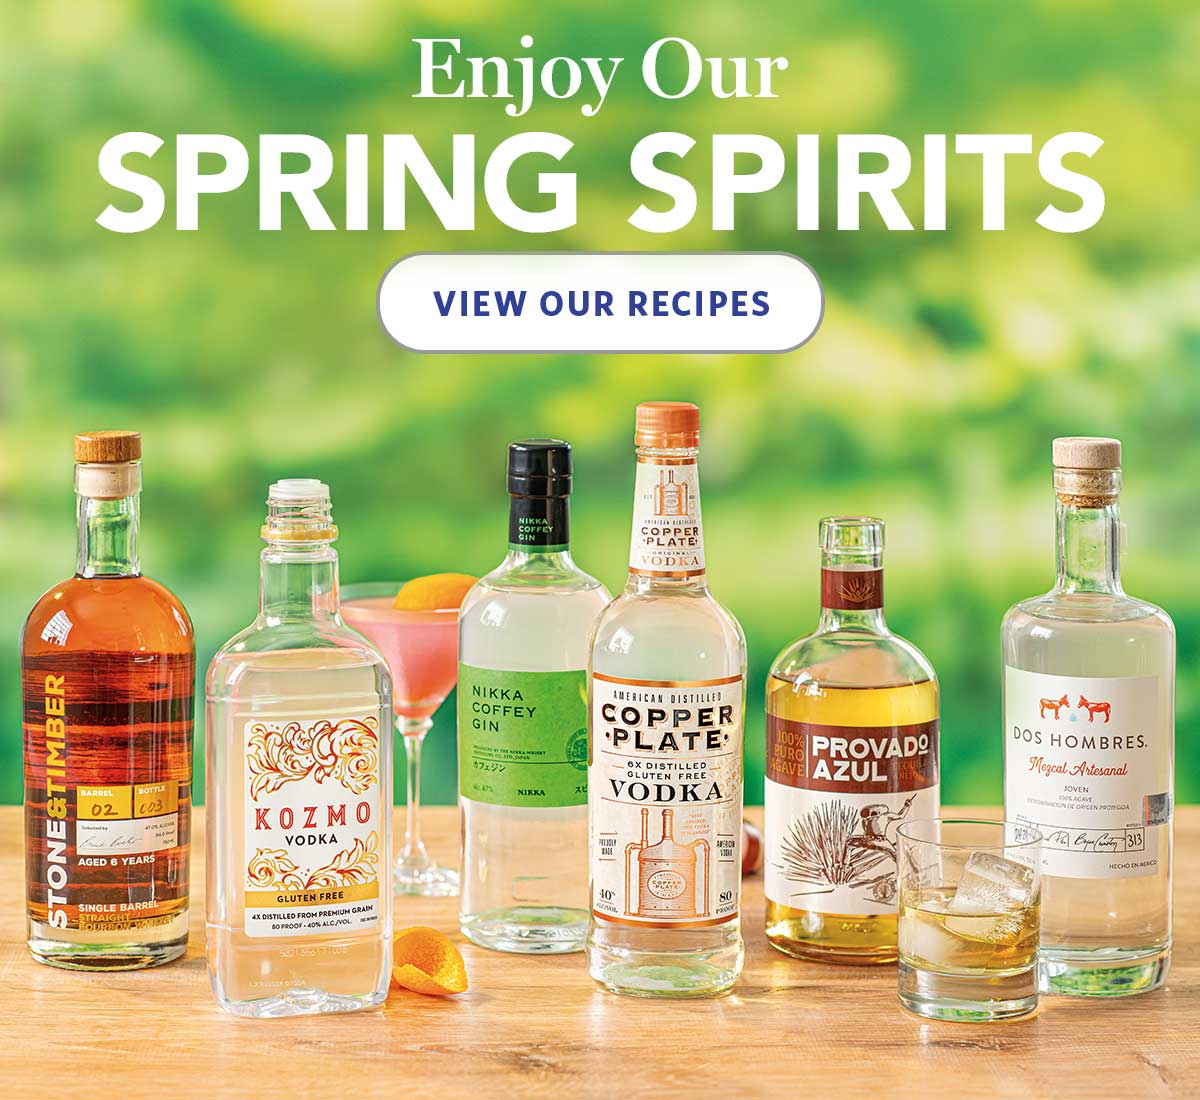 Enjoy our Spring Spirits - View Our Recipes